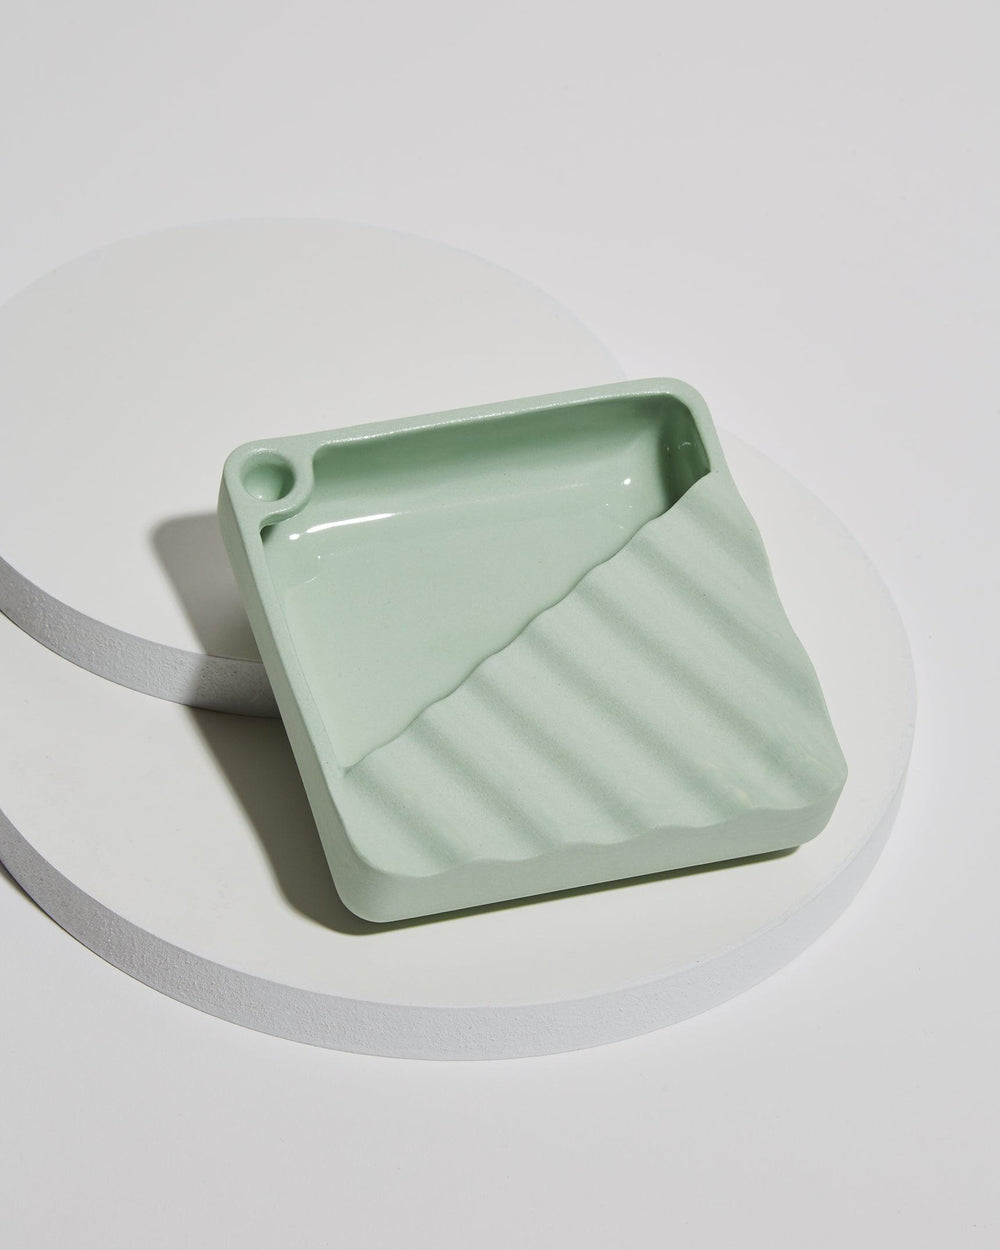 Designer handmade ceramic ashtray in mint green.